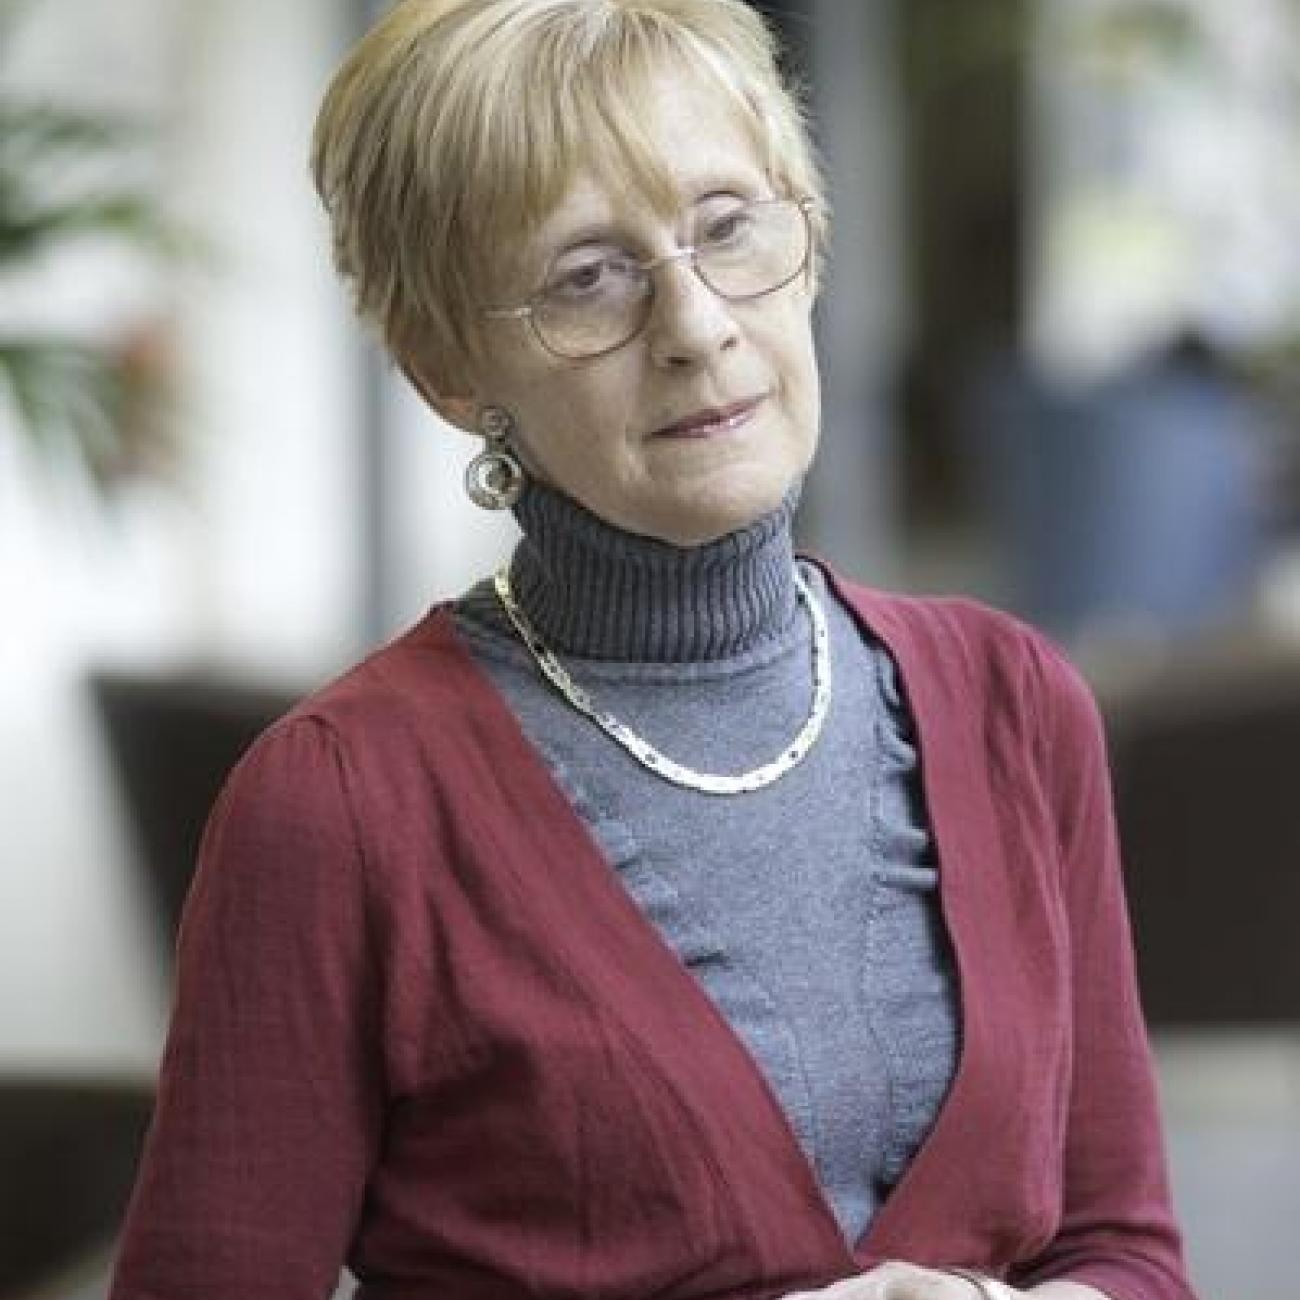 Professor Clare Mar-Molinero